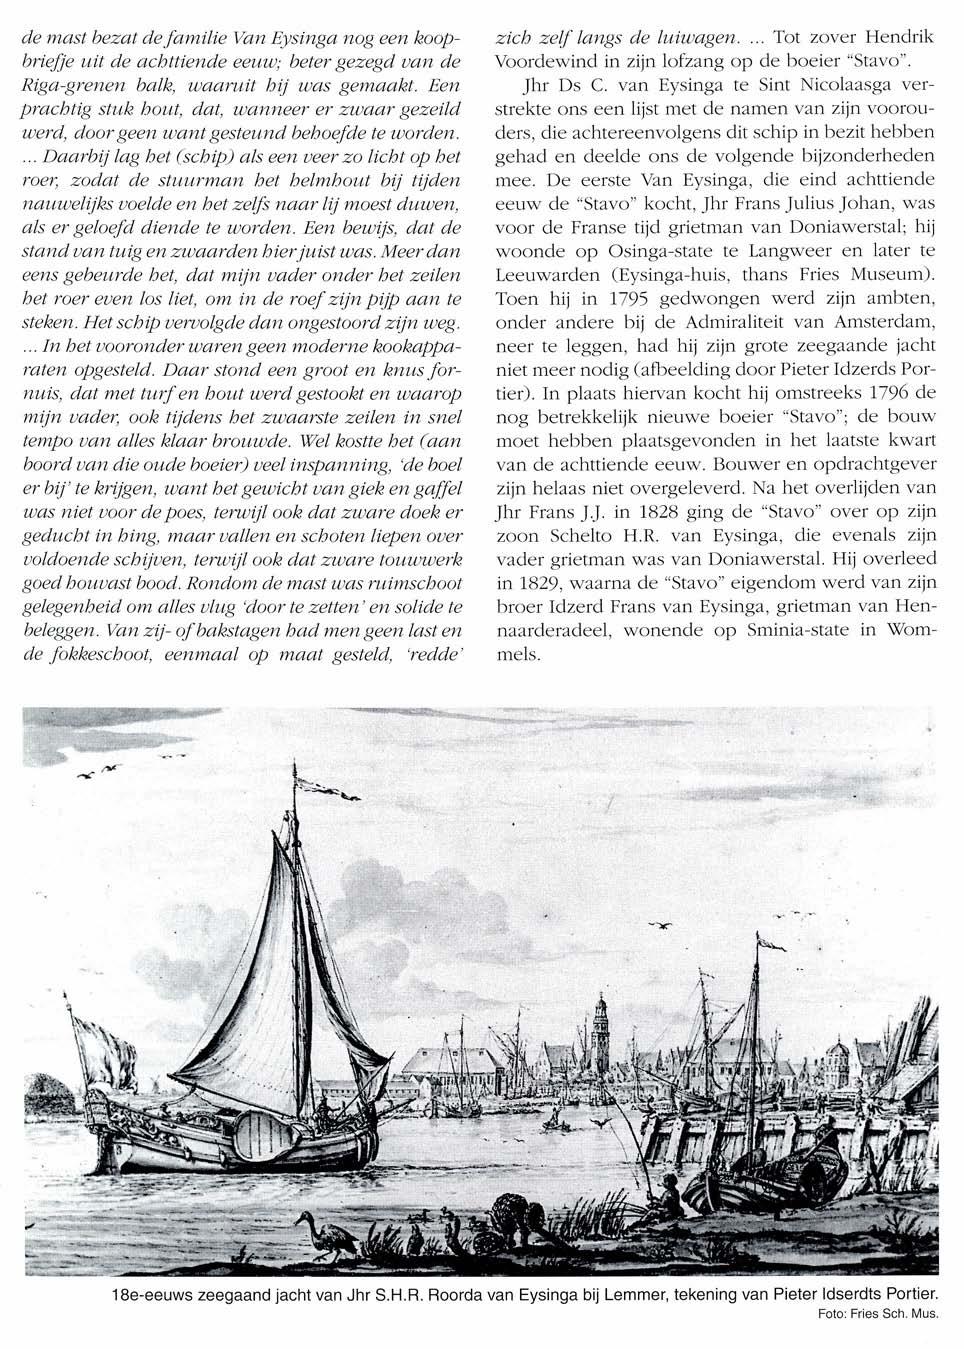 de mast bezat defamilie Van Eysinga nog een koopbriejje uit de achttiende eeuw; beter gezegd van de Riga-grenen balk, waaruit hij was gemaakt.